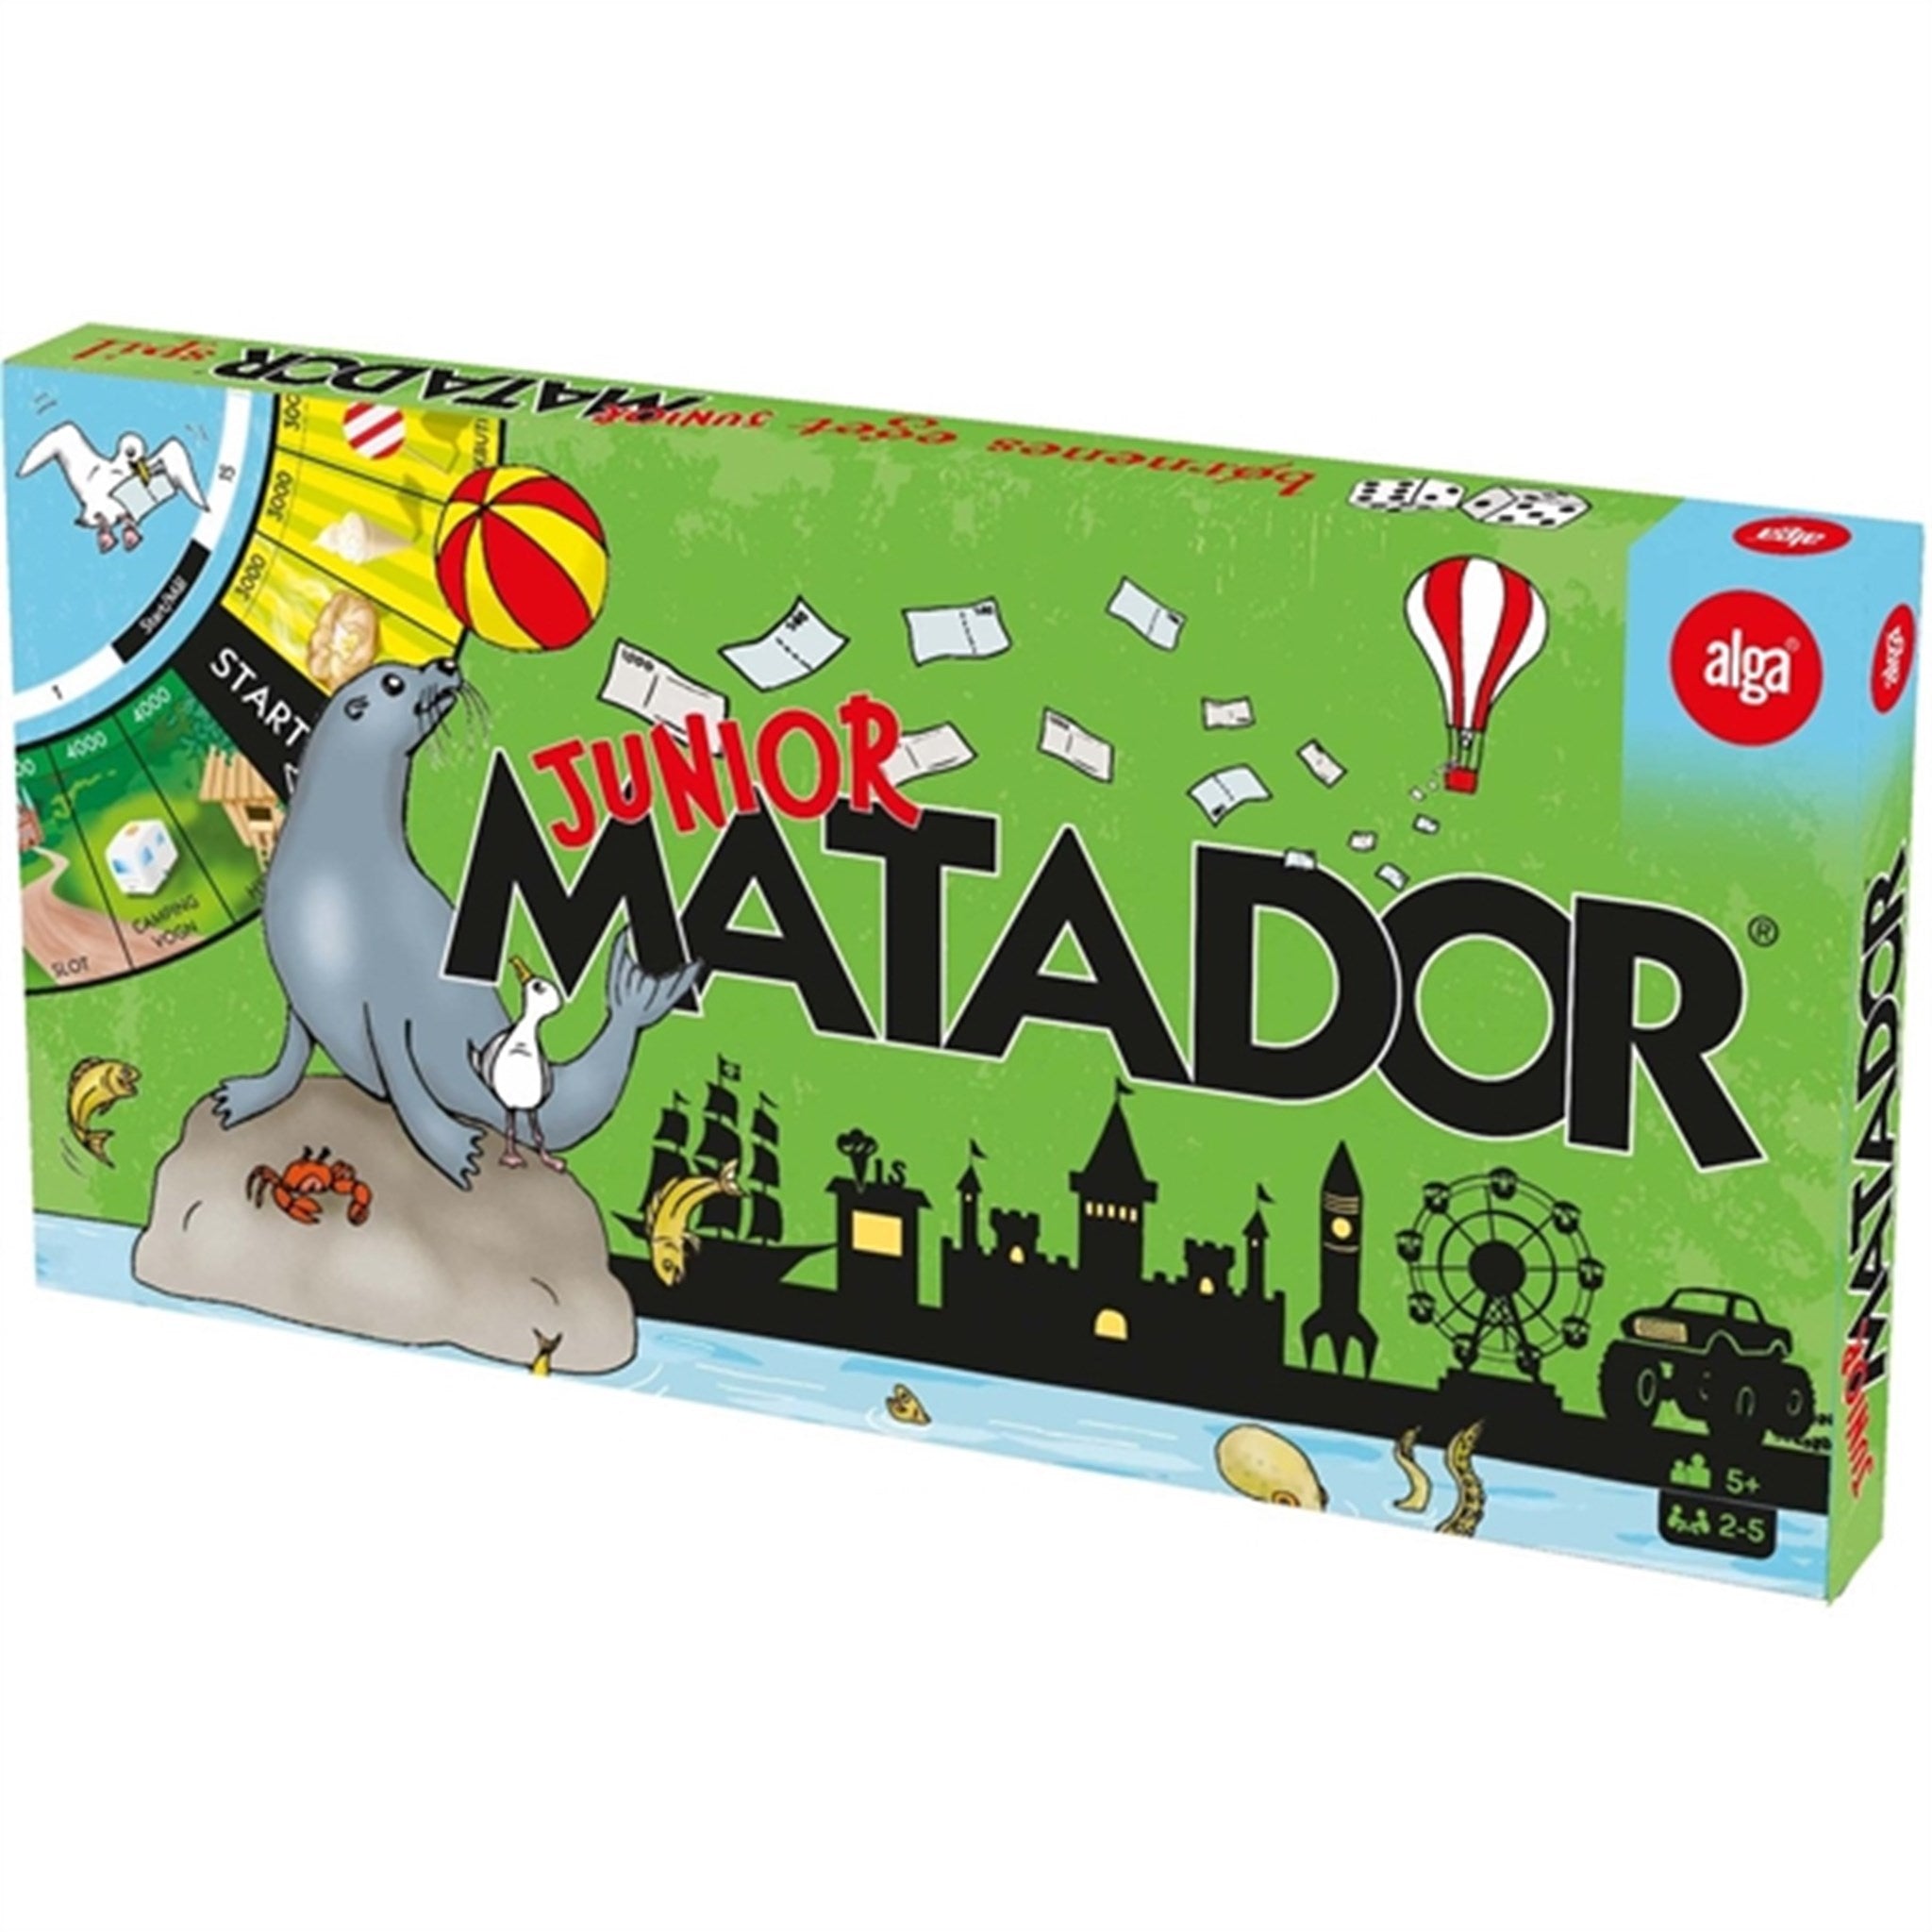 Alga Junior Matador Board Game